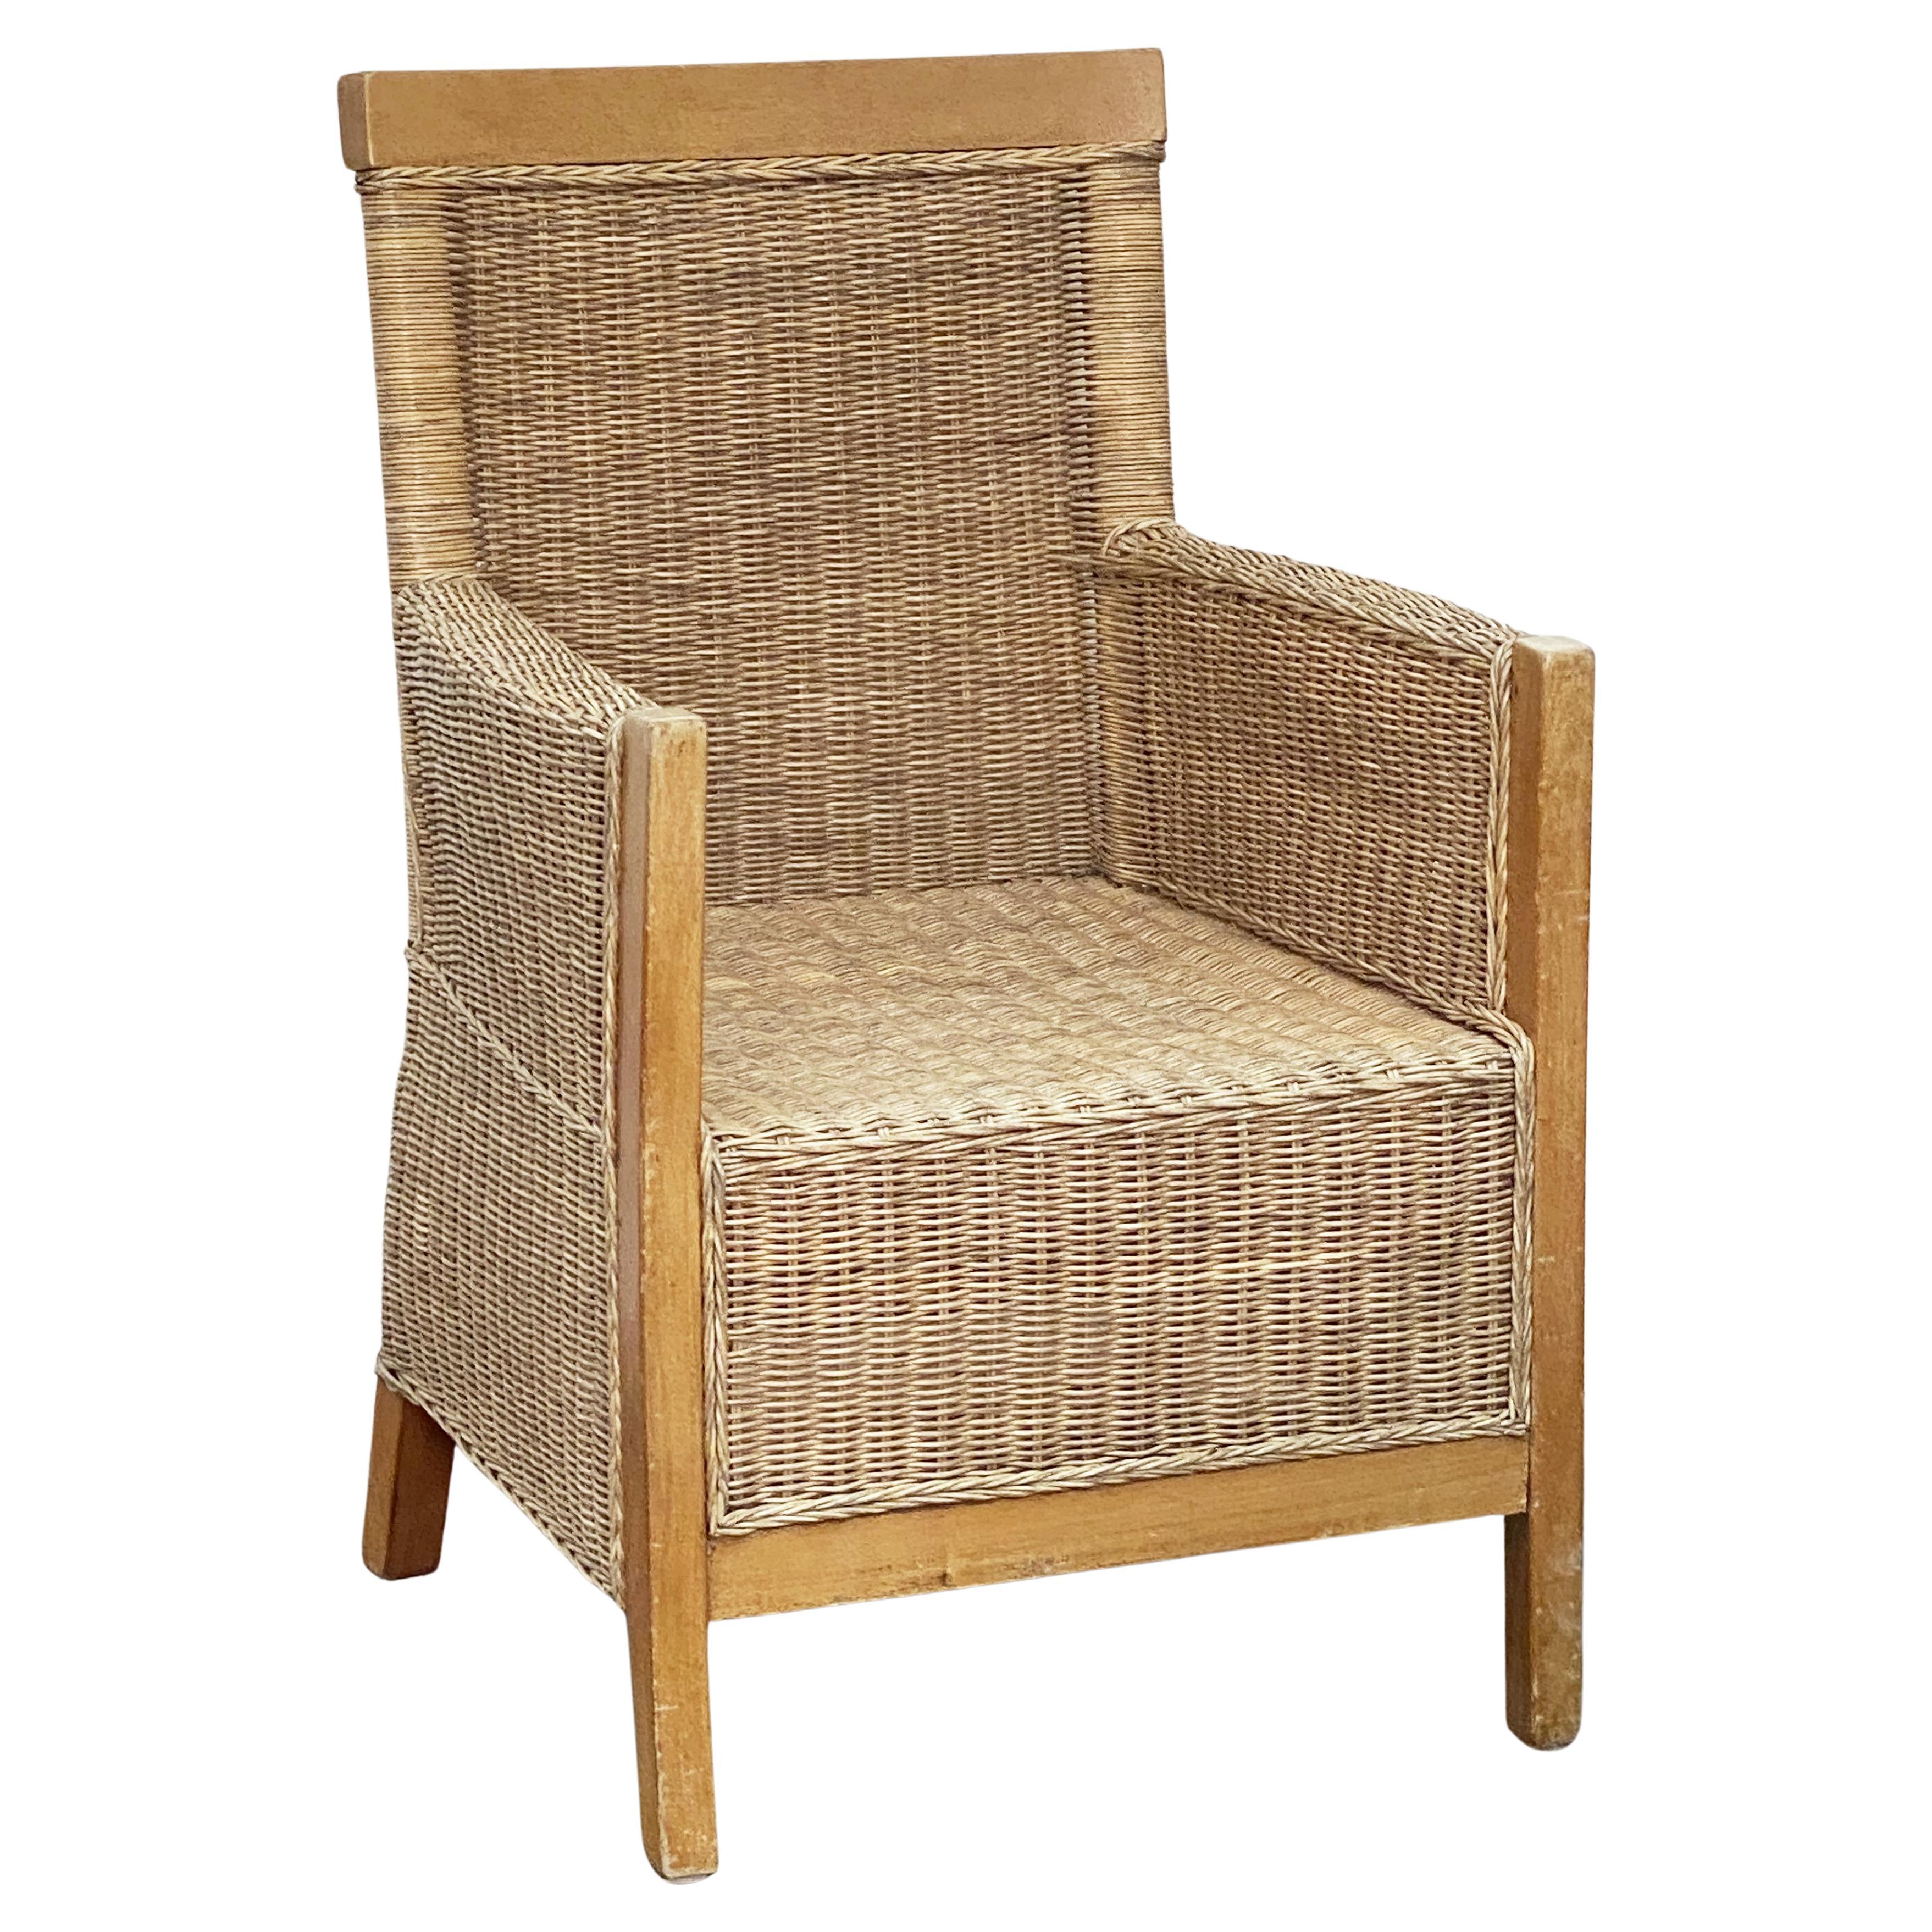 Grand fauteuil français en bois de hêtre et rotin de osier tressé, « Deux disponibles »